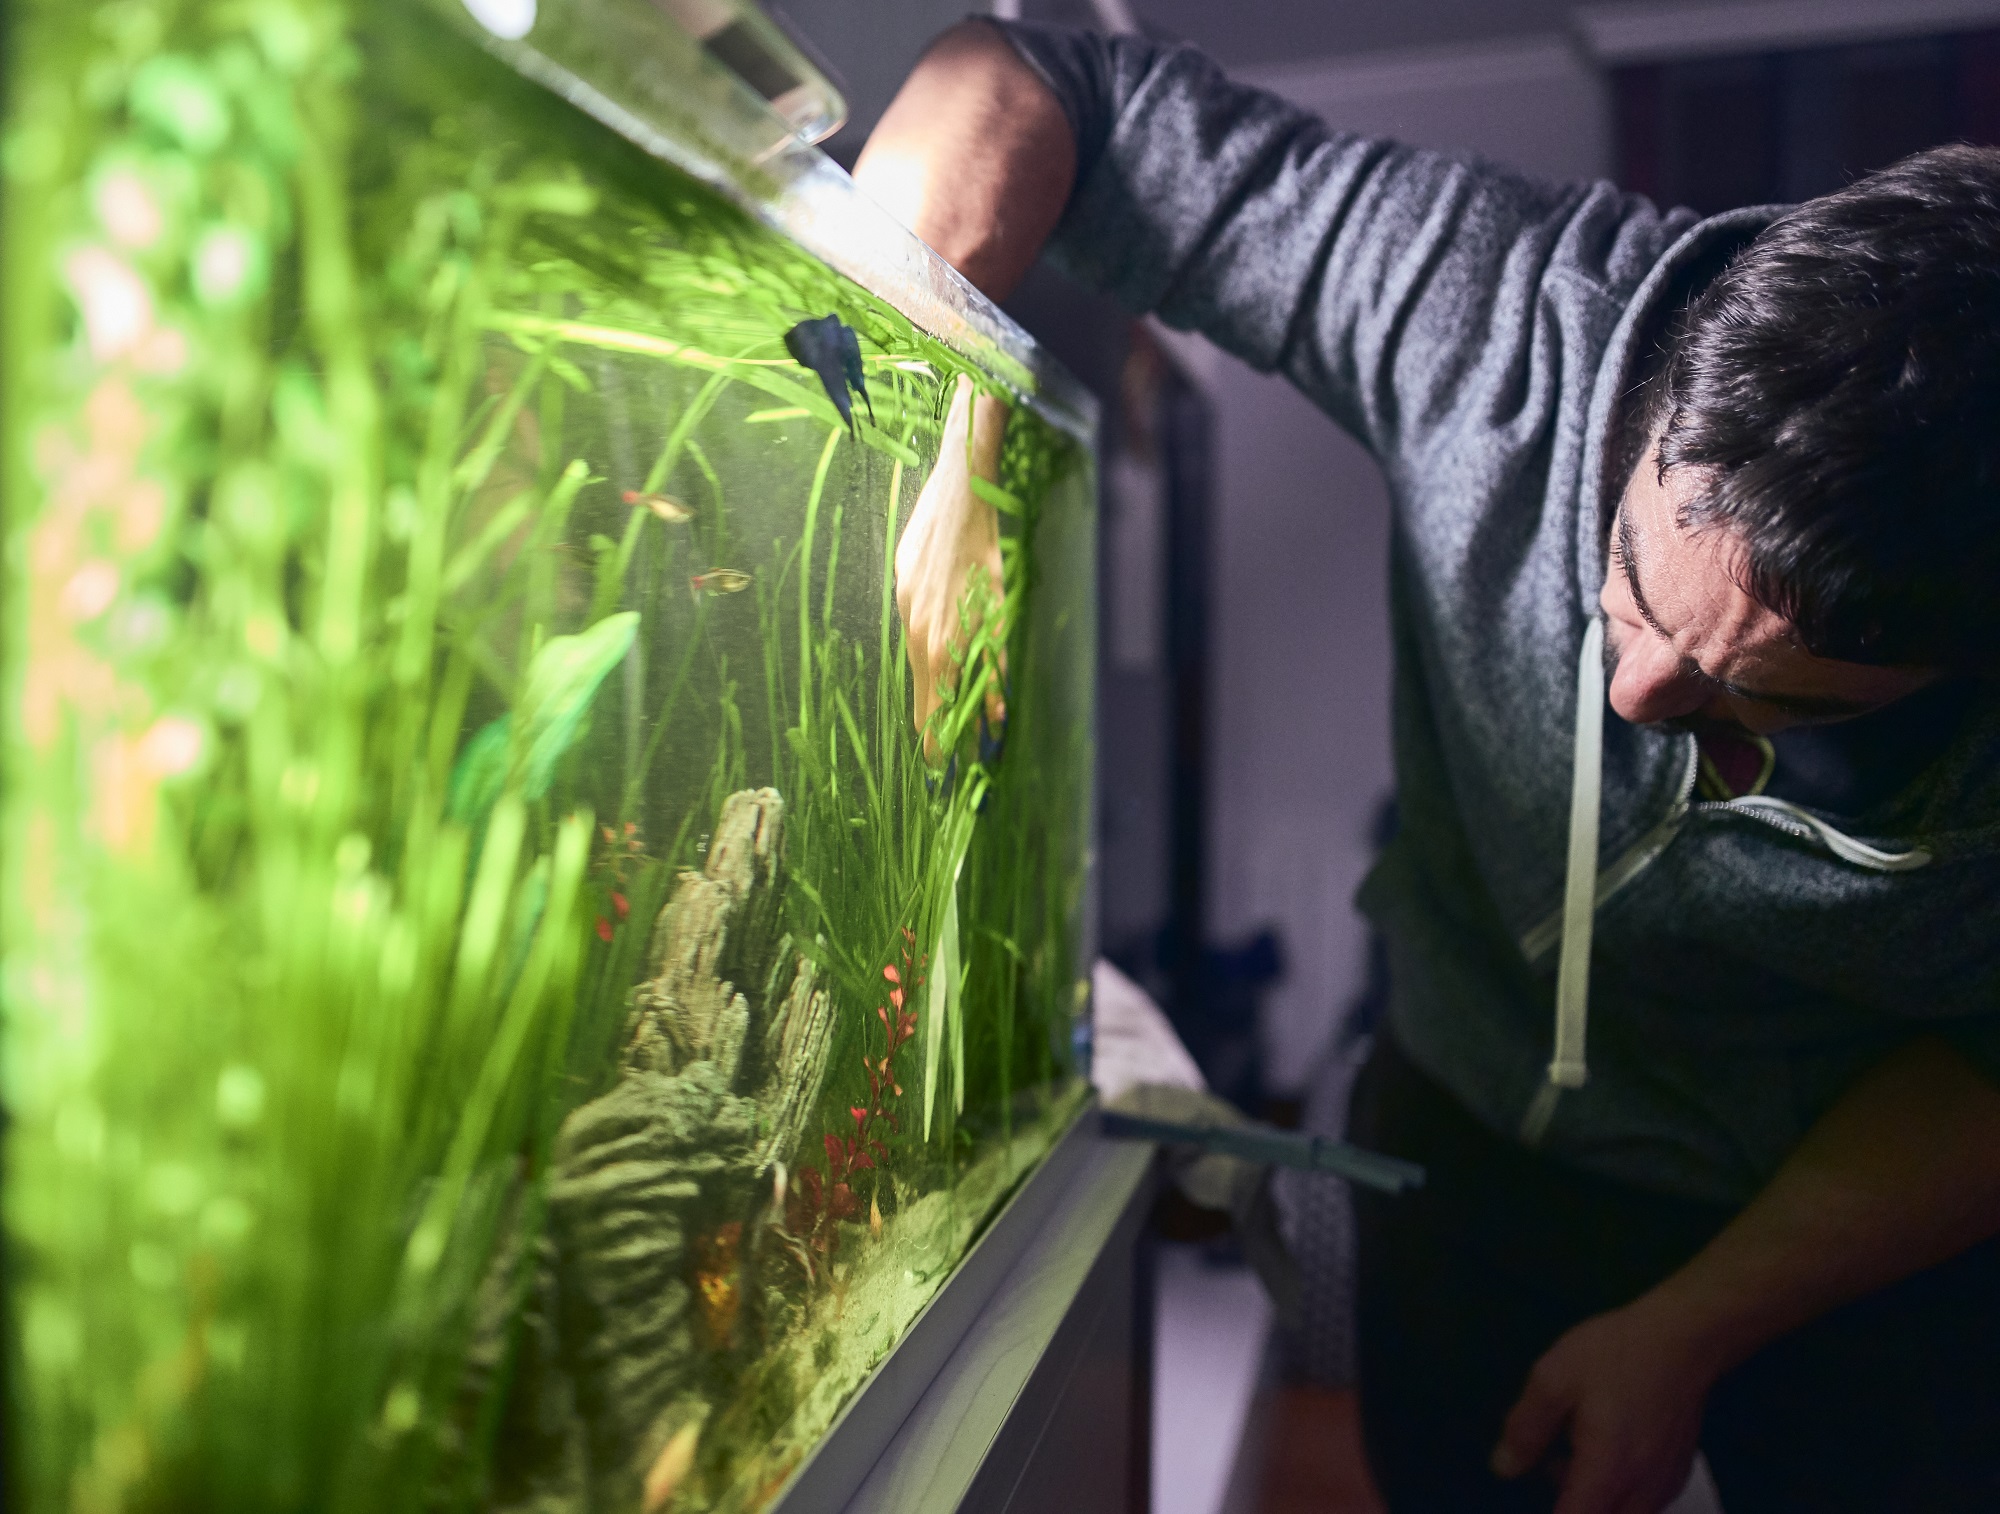 Установка фильтров в аквариумы в Москве — 13 аквариумистов, 4 отзыва на Профи